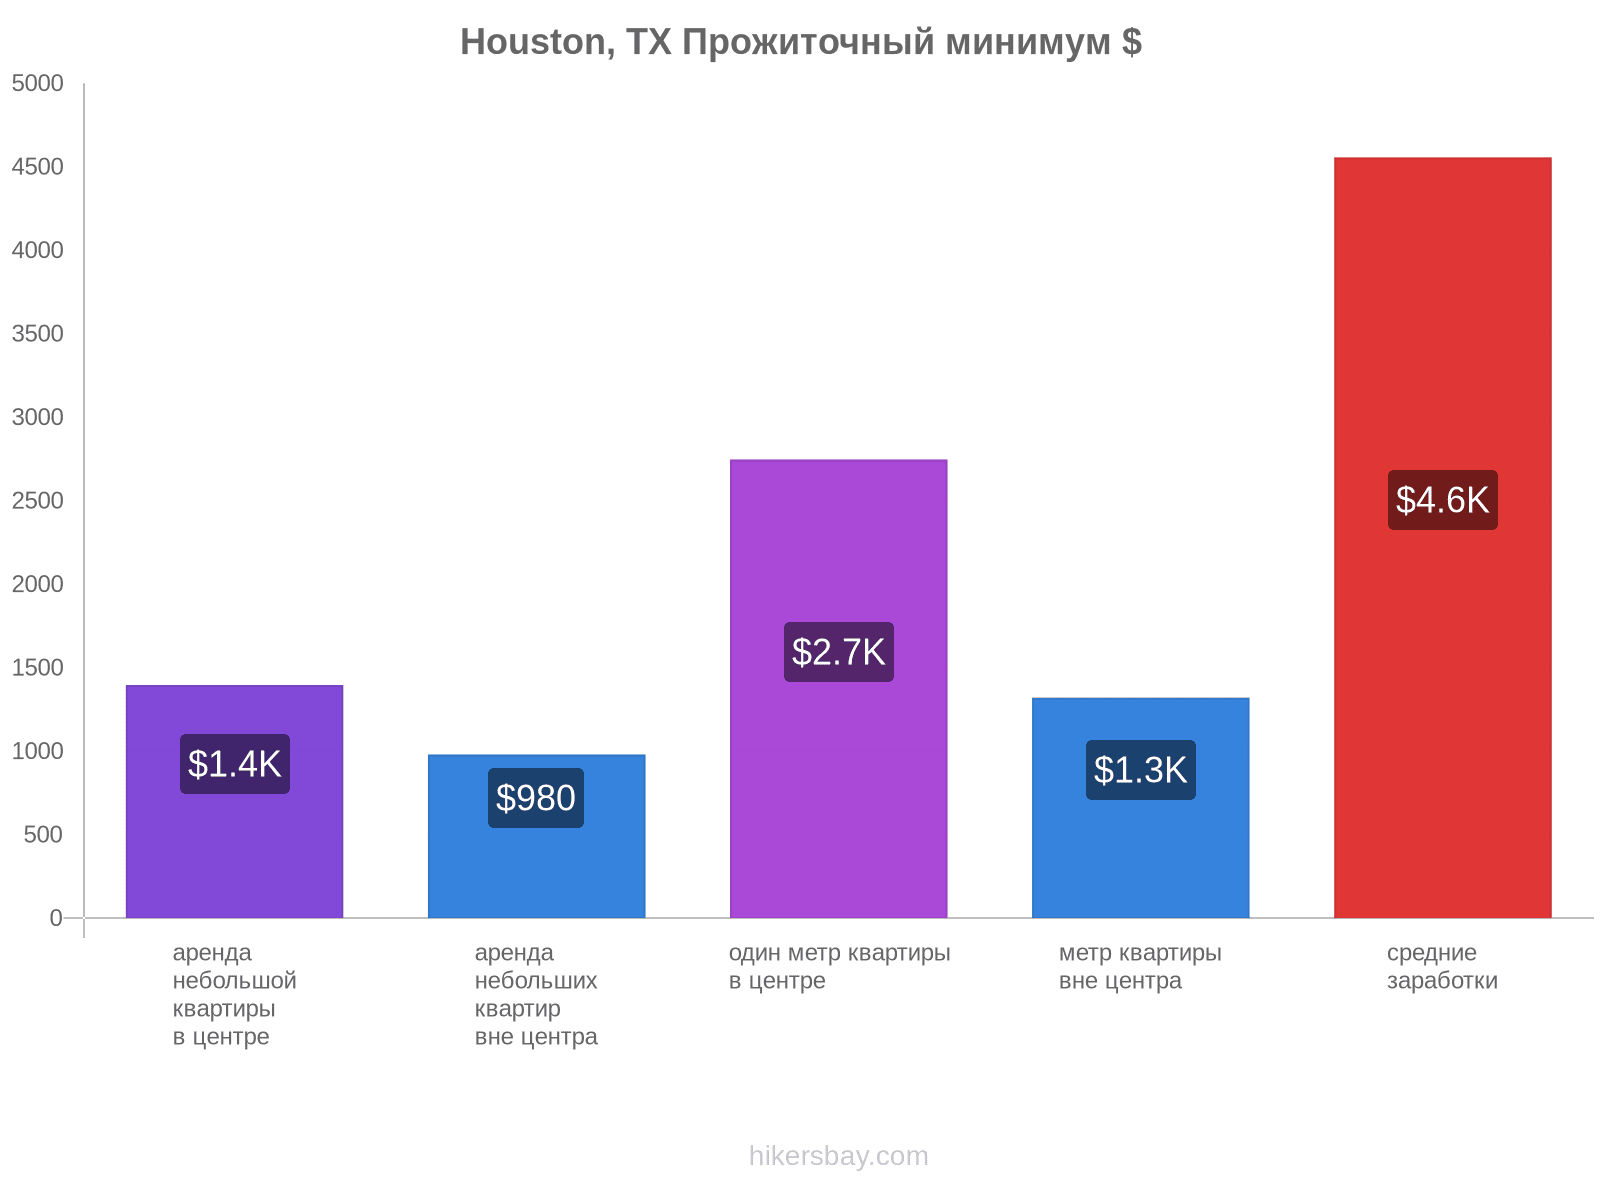 Houston, TX стоимость жизни hikersbay.com